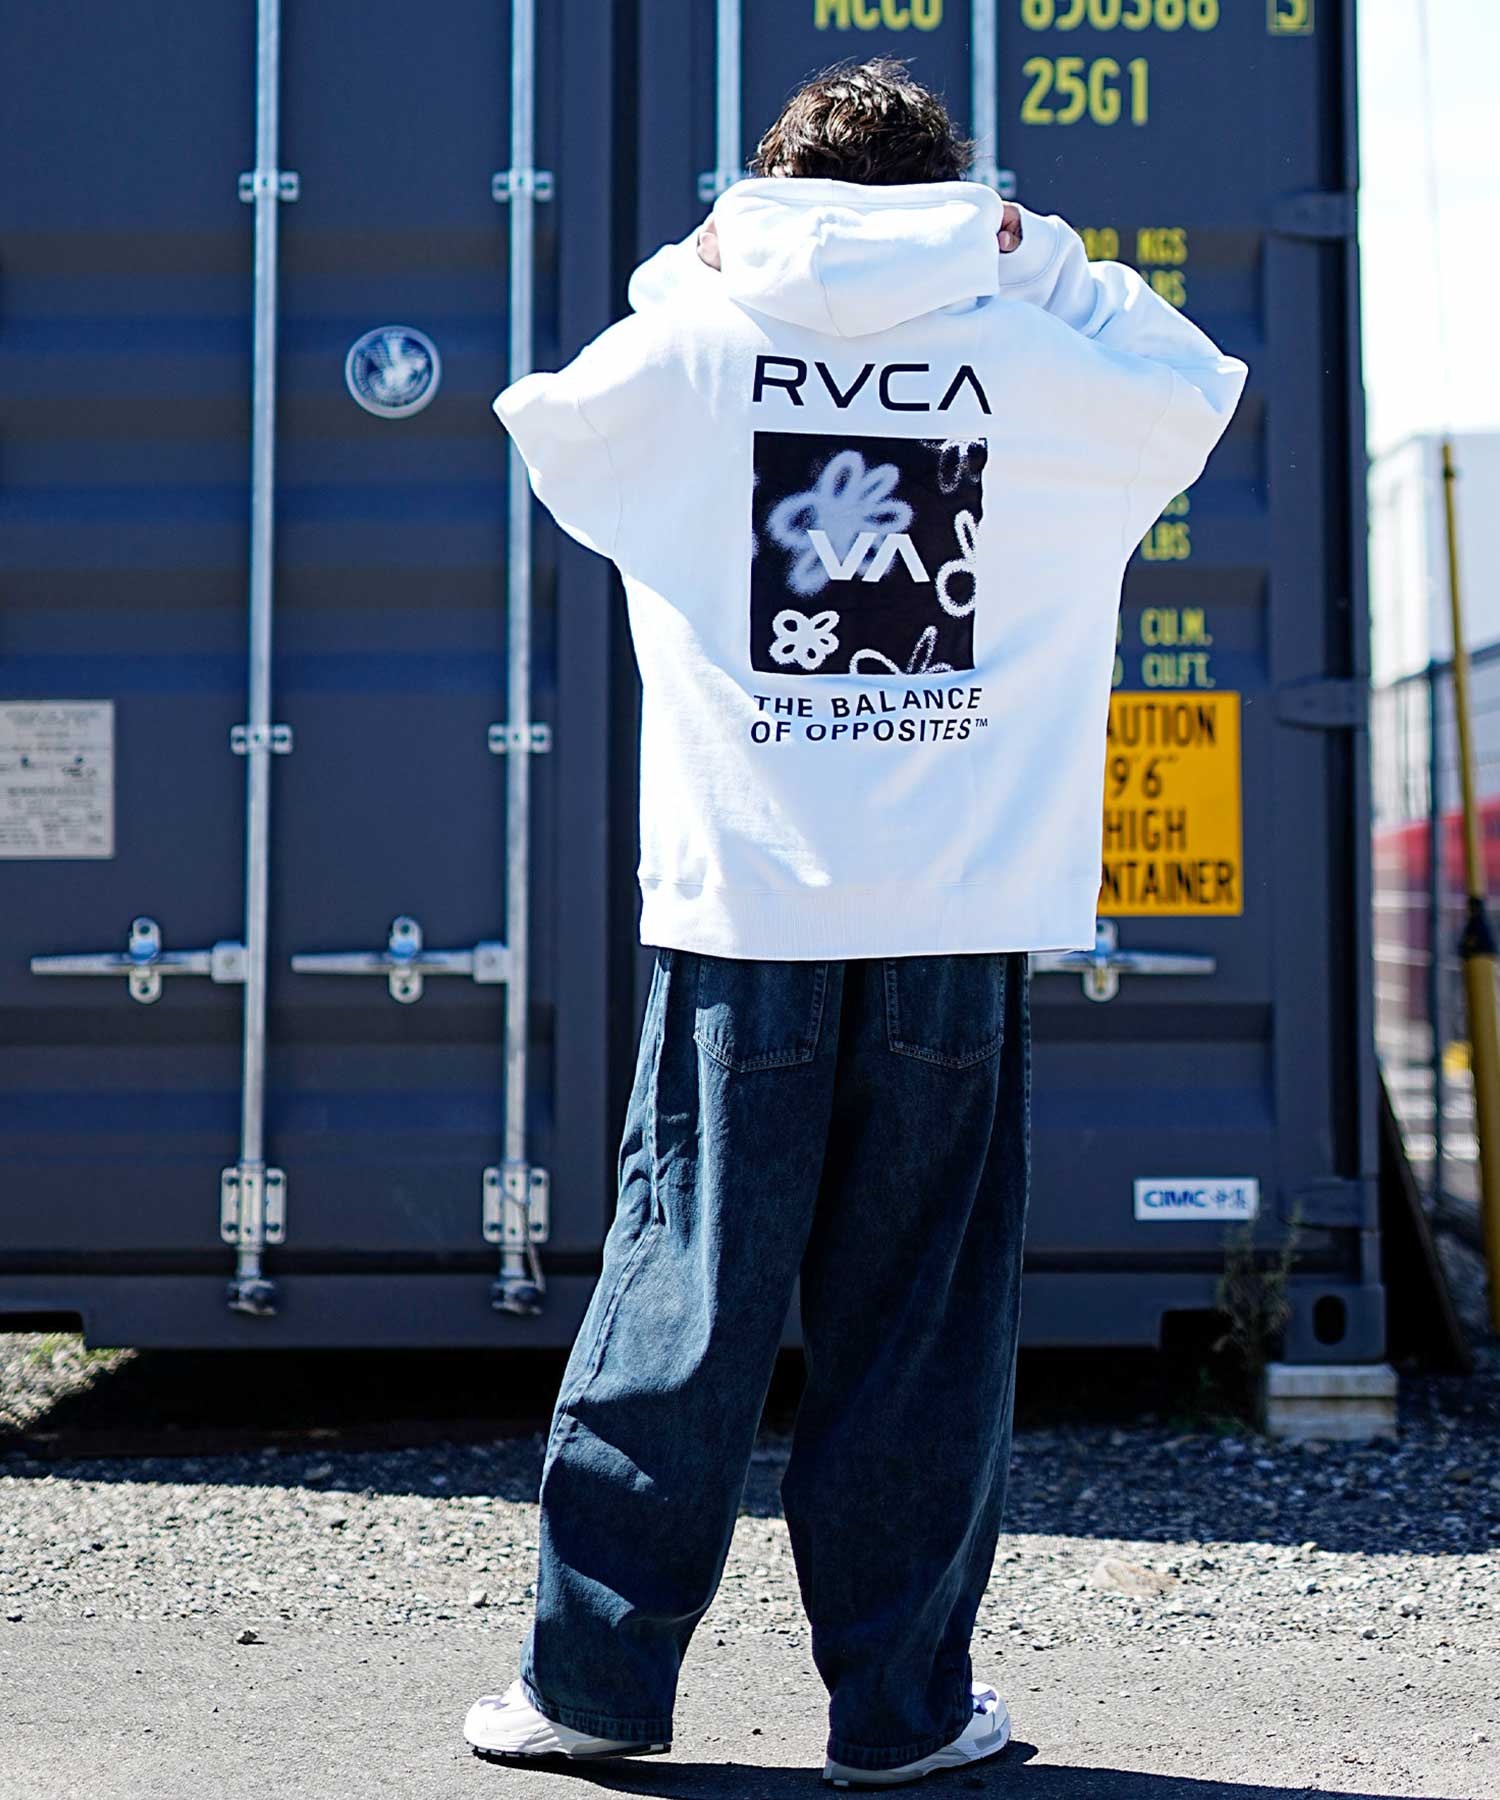 【クーポン対象】RVCA/ルーカ メンズ スクエア ロゴ オーバーサイズ クルーネック パーカー BD042-162(KHA-S)